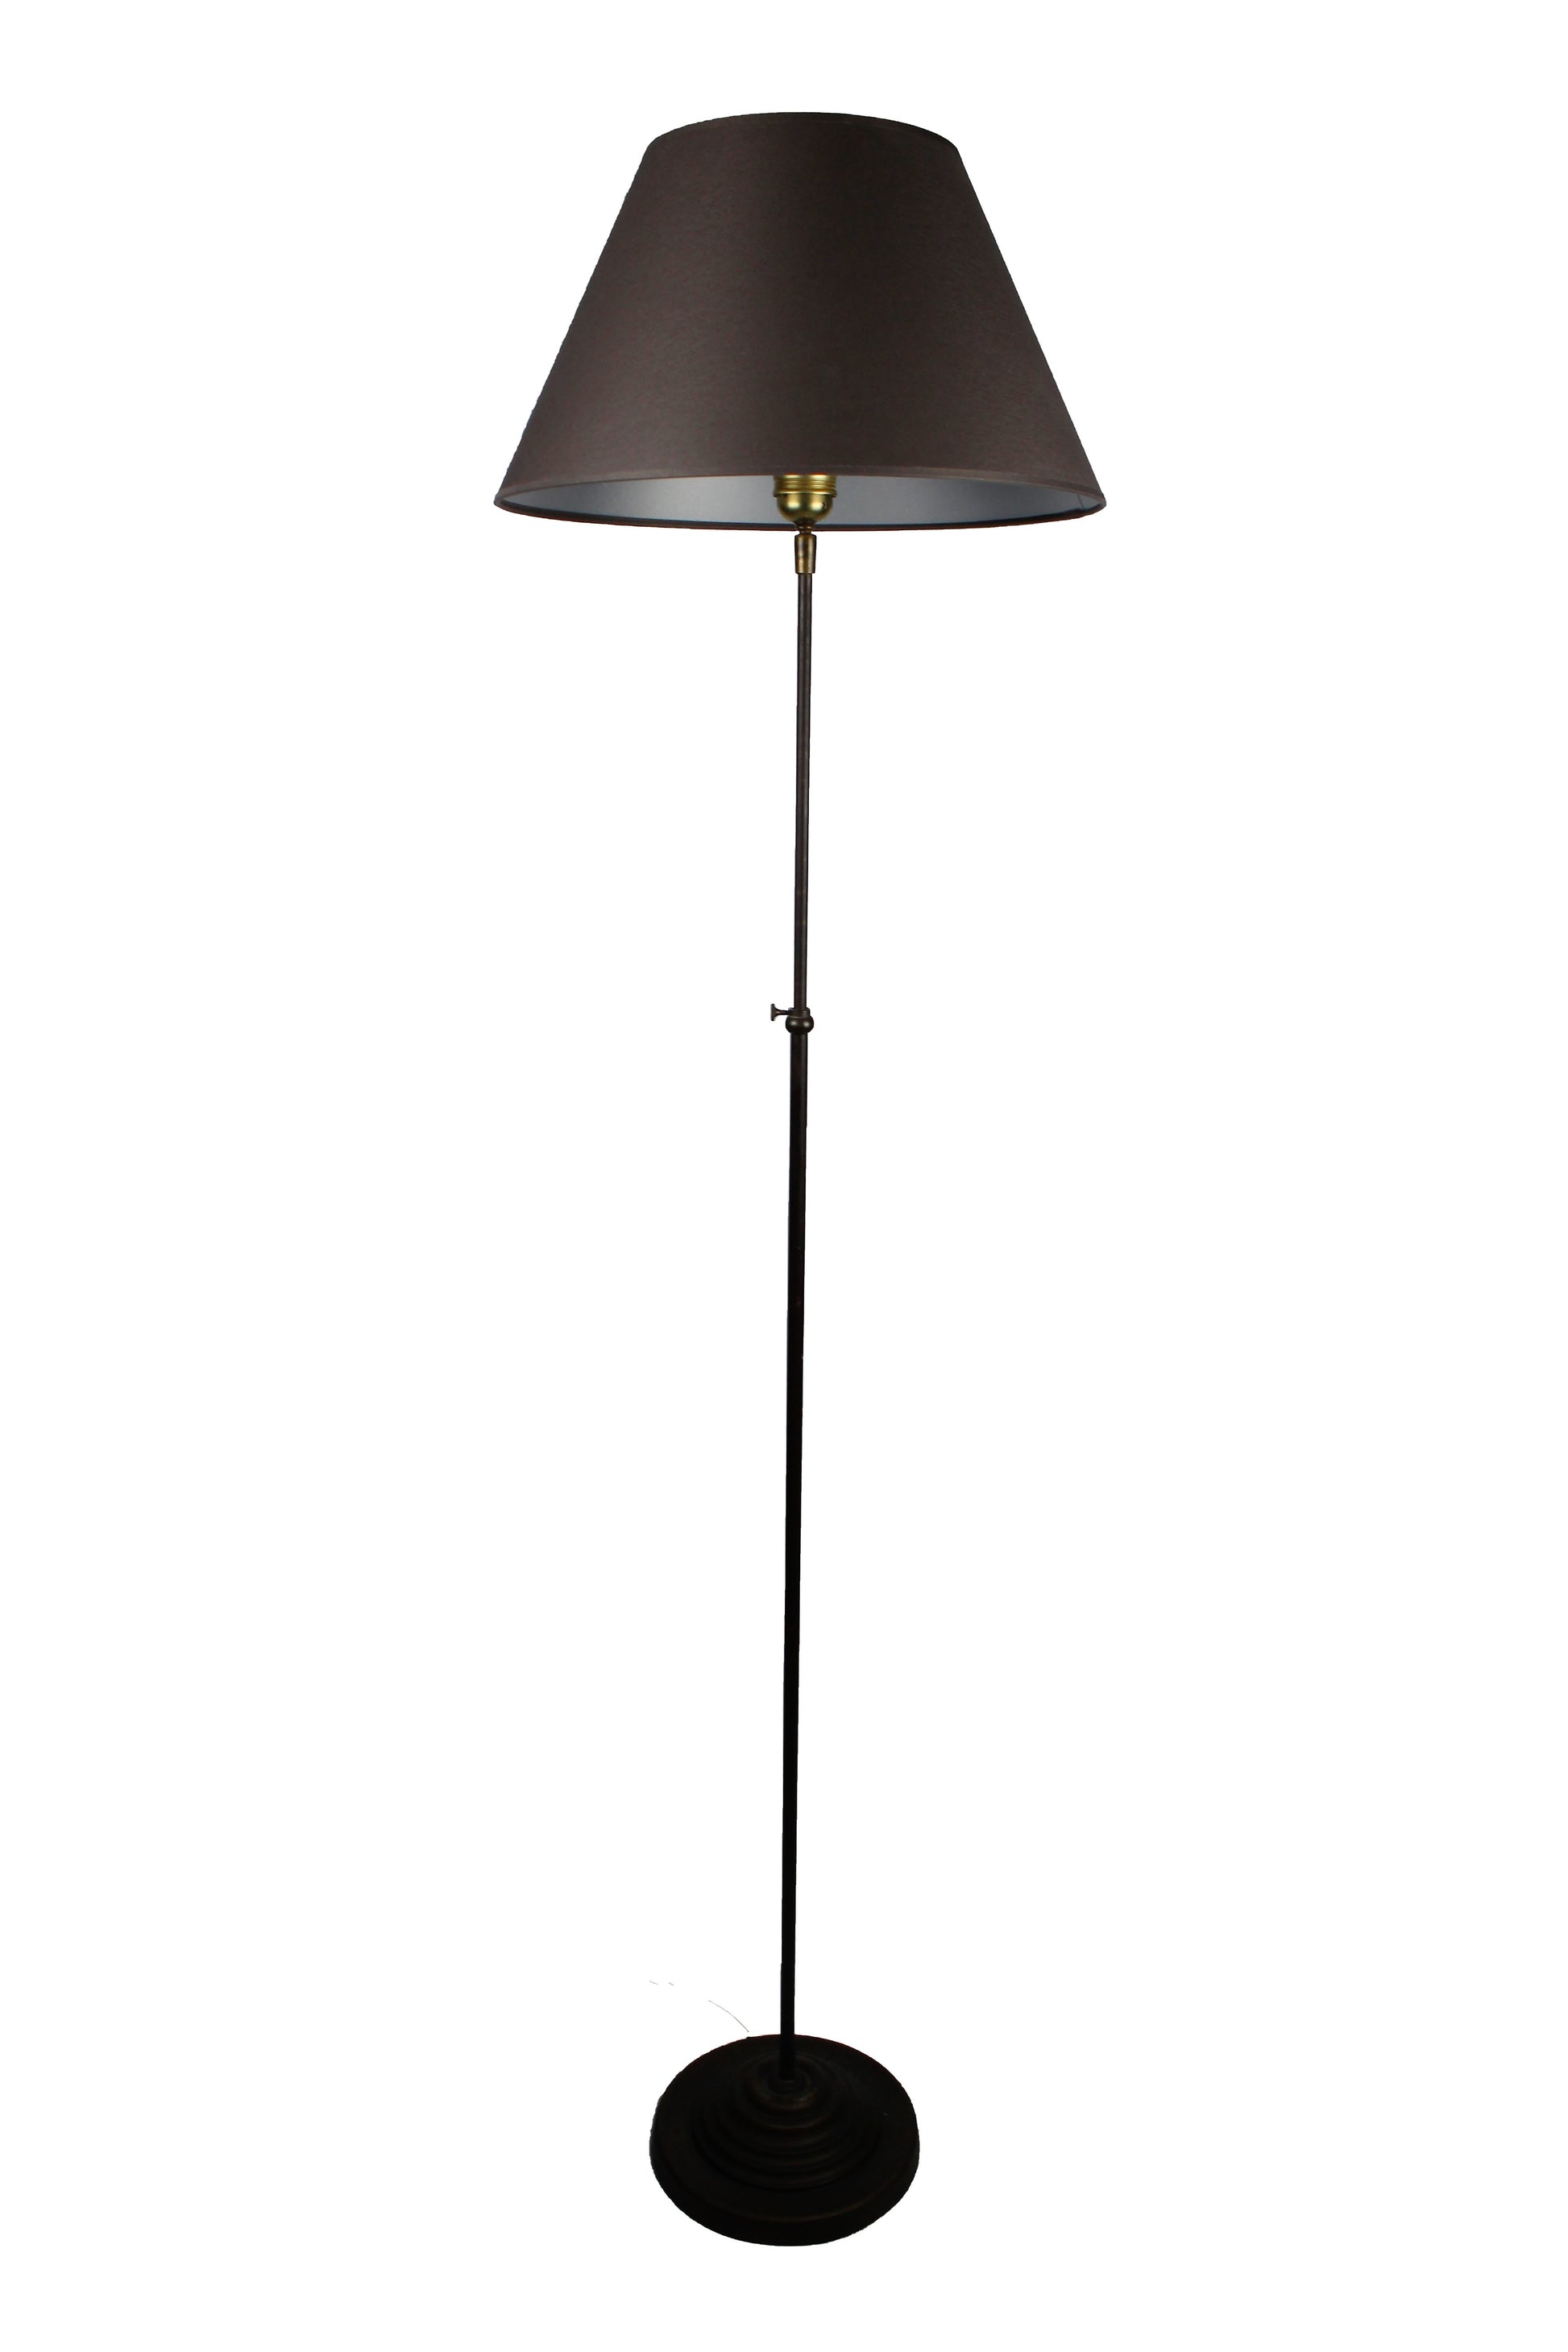 Stehlampe Metall dunkelbraun mit konischem Schirm dunkelgrau innen silber